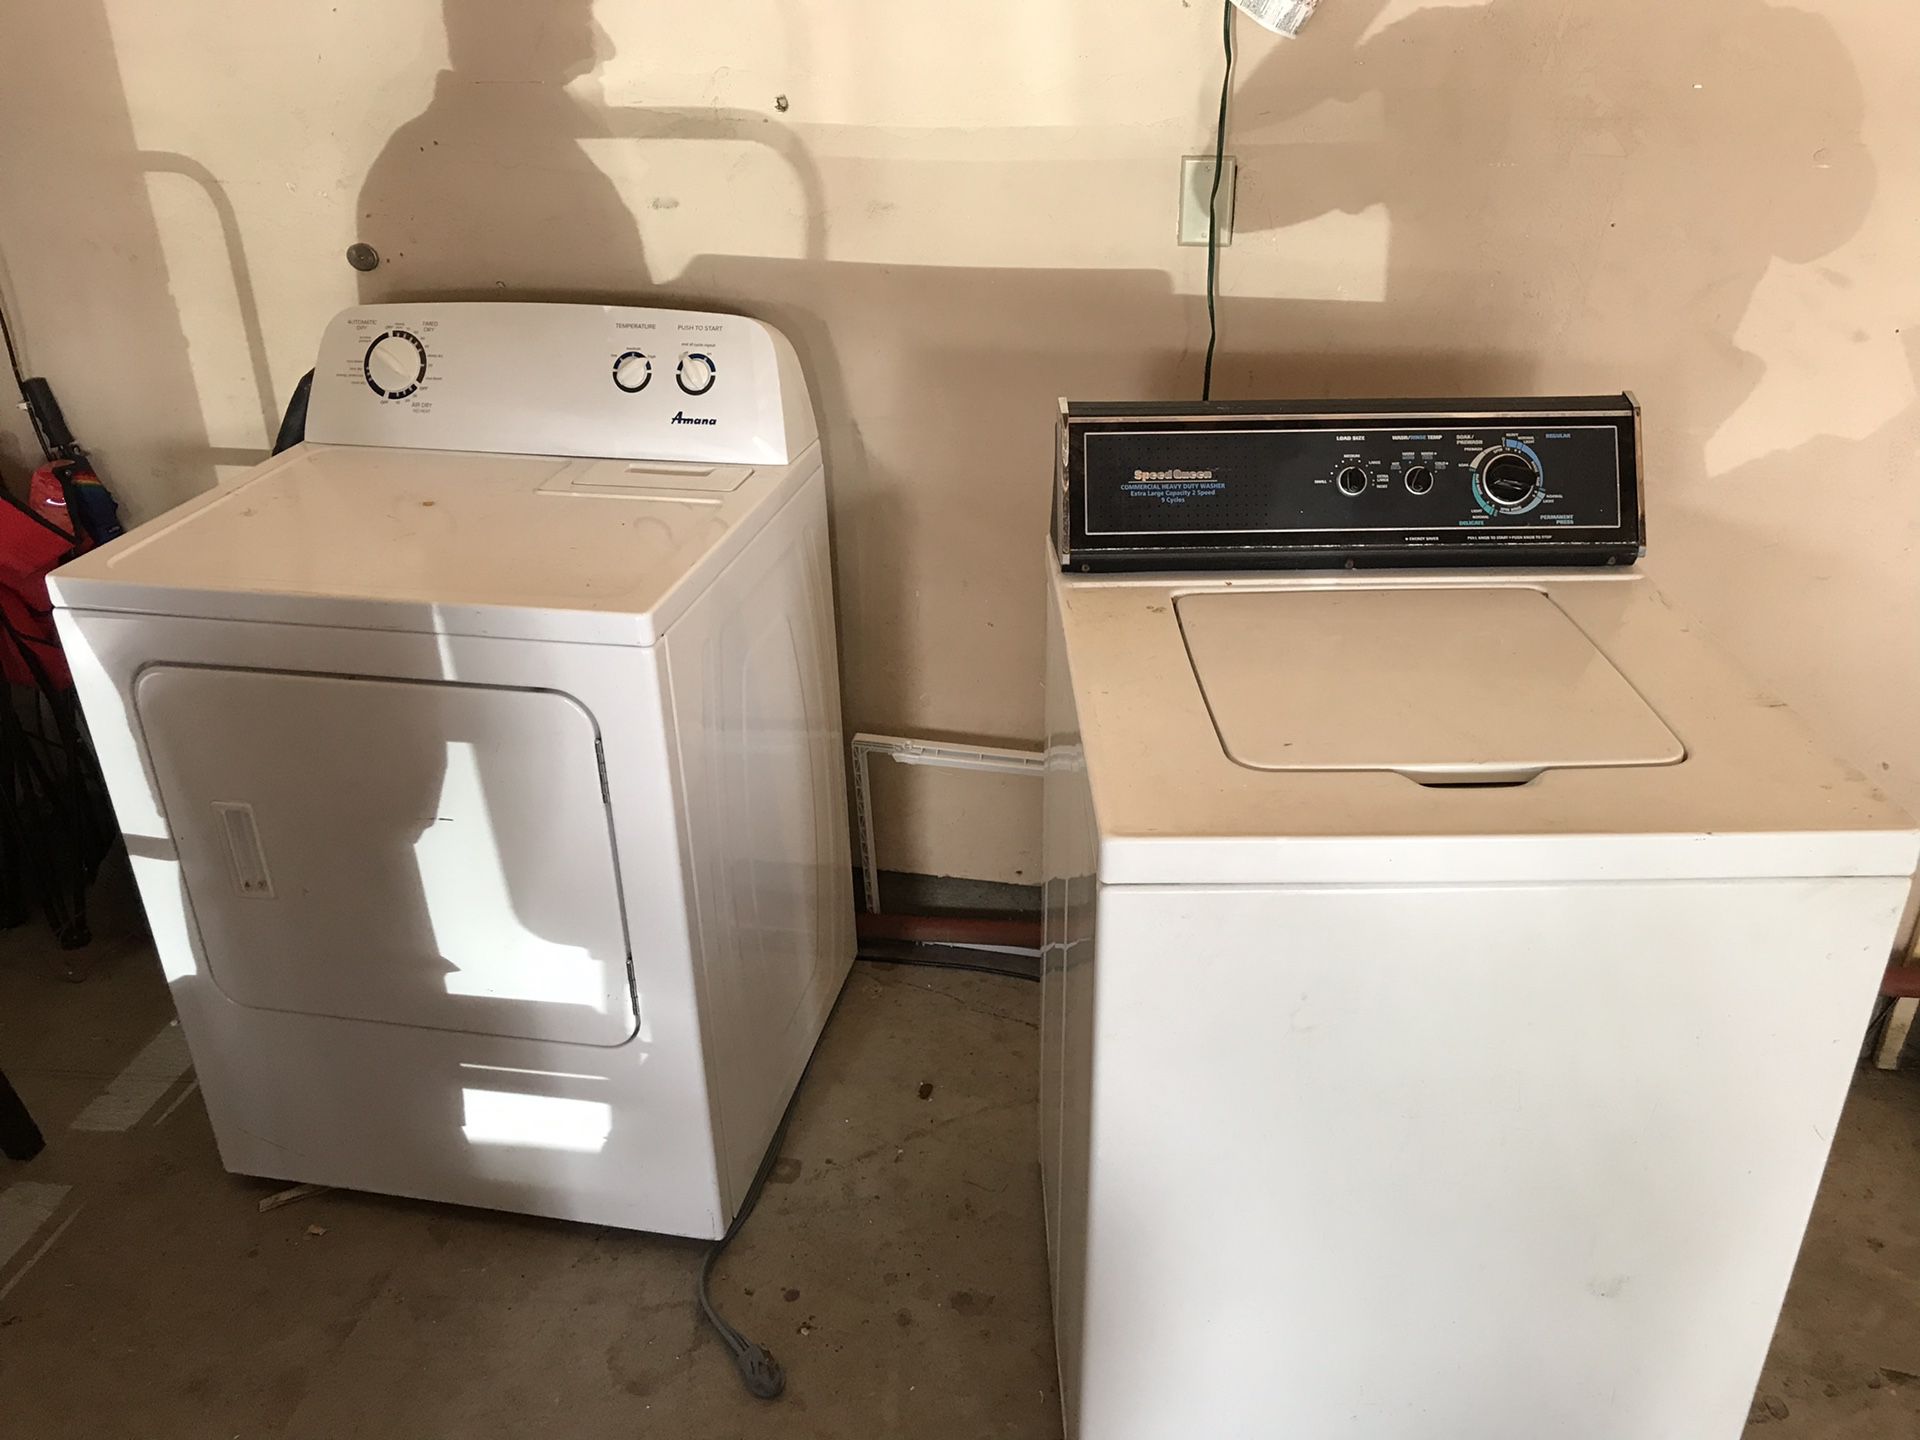 Washer dryer both work good